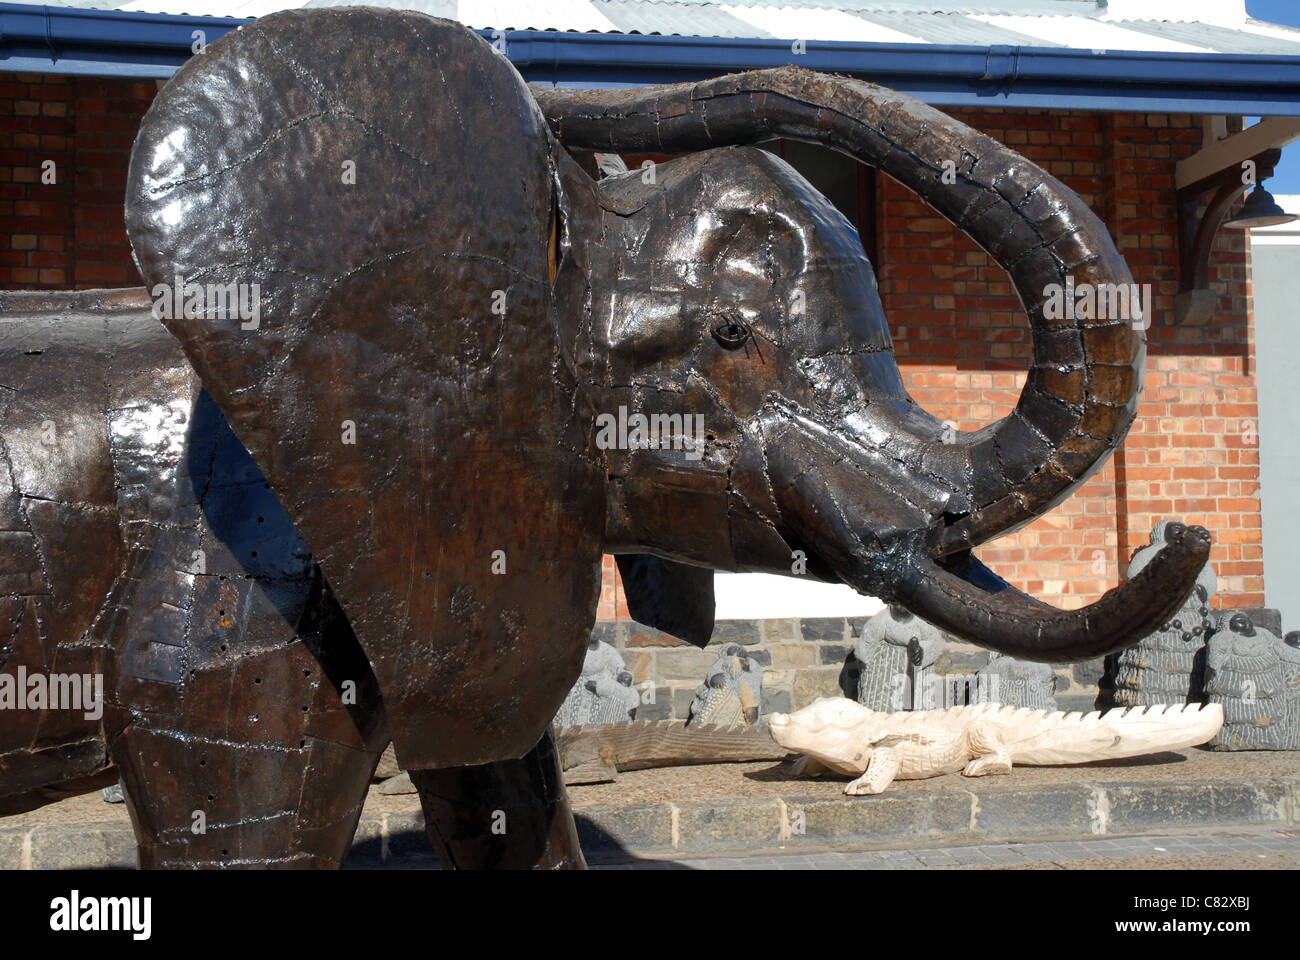 Elefante scolpito sul display al di fuori di un negozio, V&A Waterfront, Città del Capo, Western Cape, Sud Africa Foto Stock